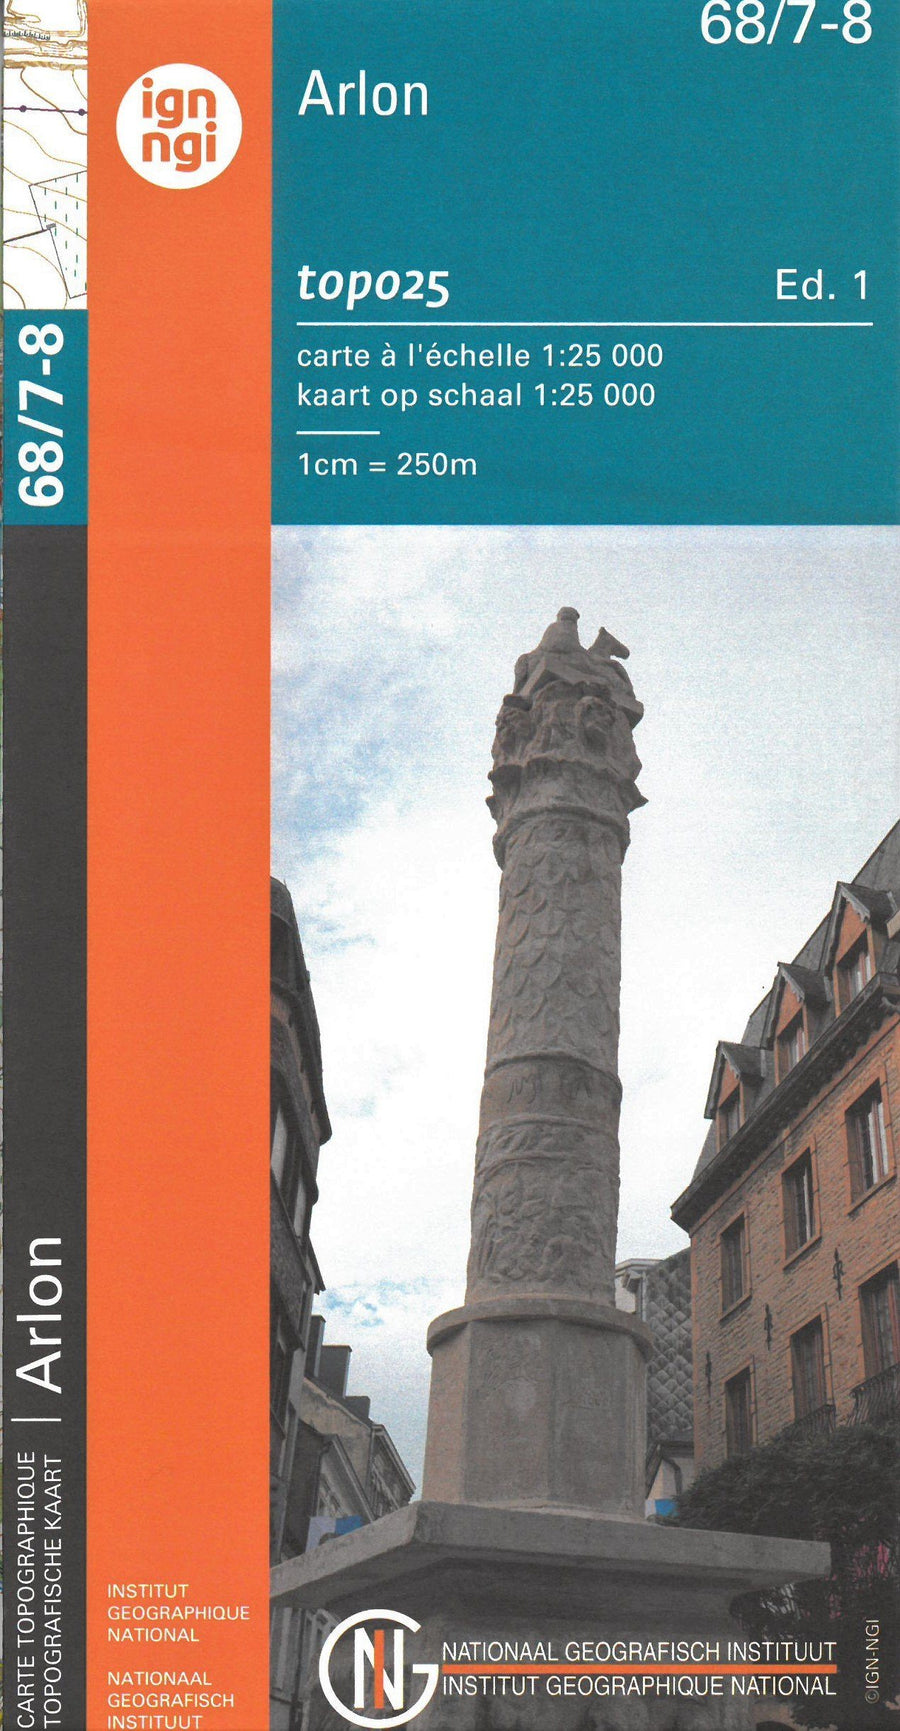 Carte topographique n° 68/7-8 - Arlon (Belgique) | NGI topo 25 carte pliée IGN Belgique 